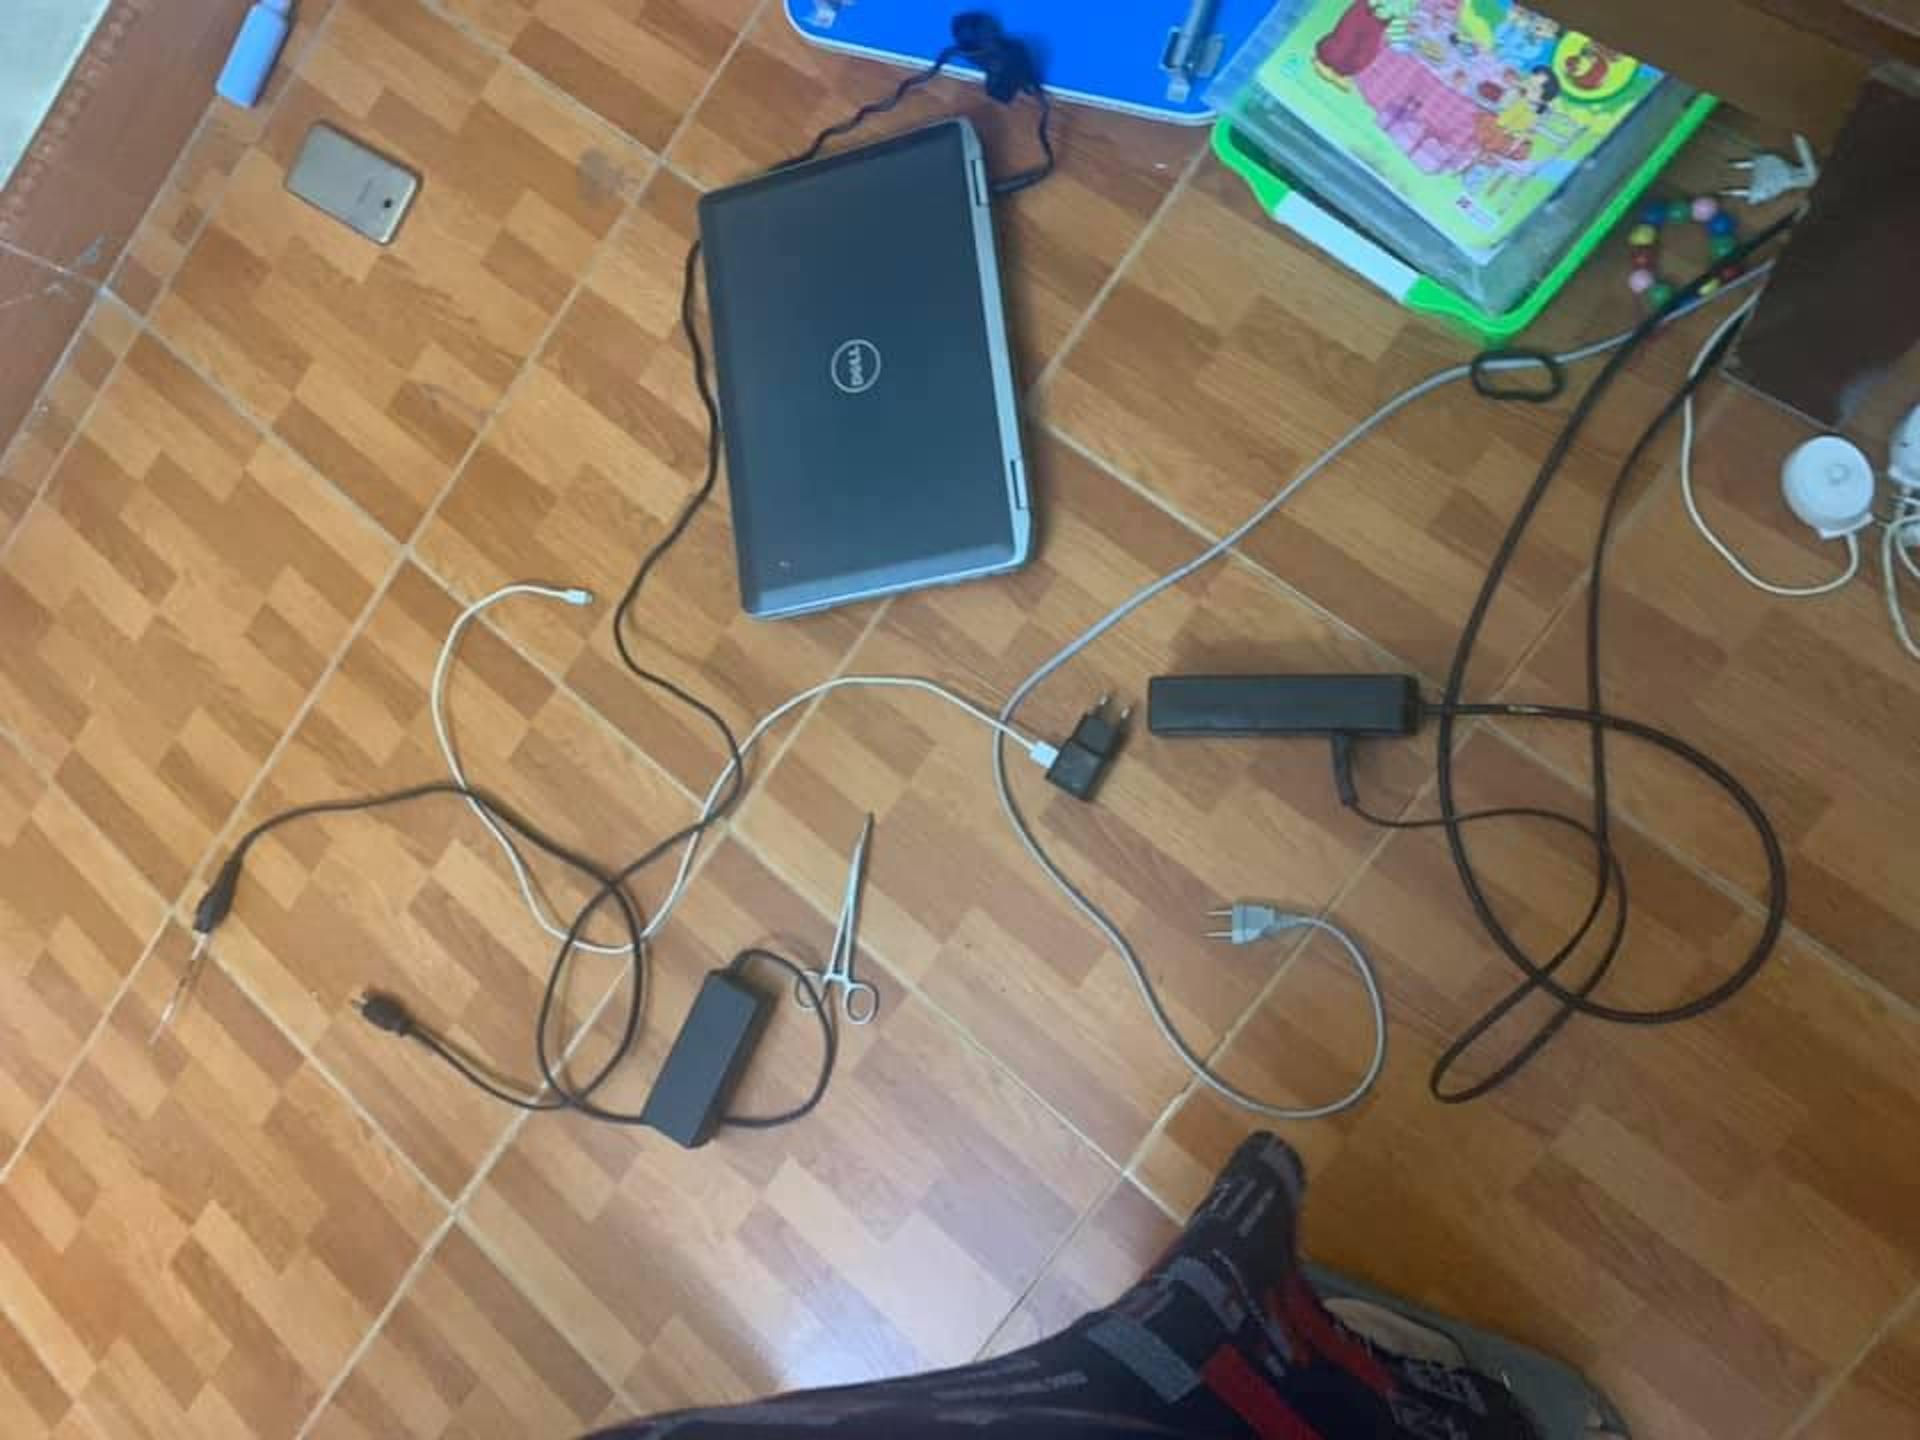 Bé trai 10 tuổi ở Hà Nội bị điện giật chết thương tâm khi học trực tuyến - 1